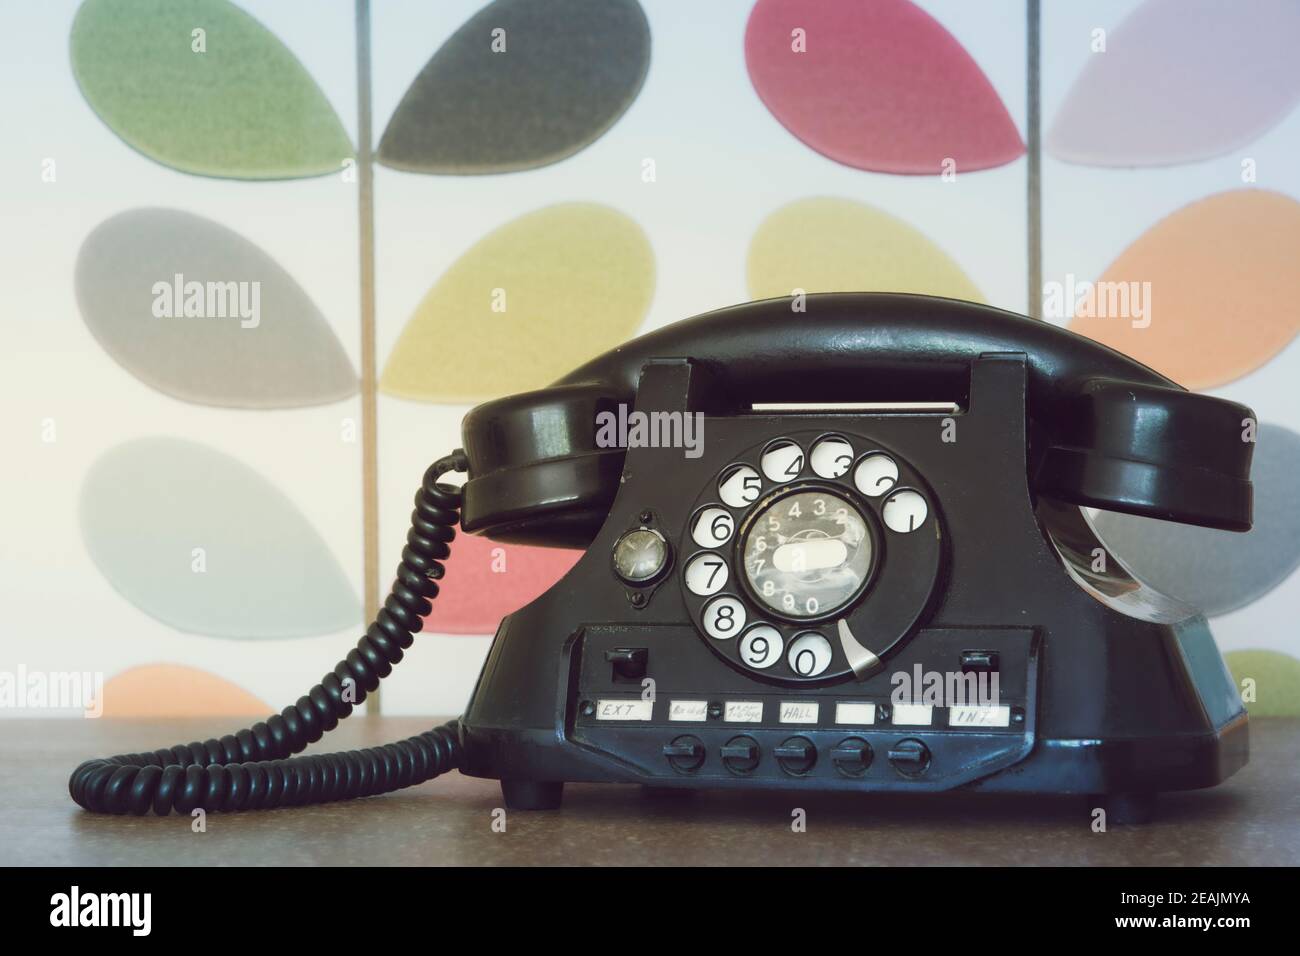 Vecchio telefono retro e vintage contro carta da parati colorata Foto Stock